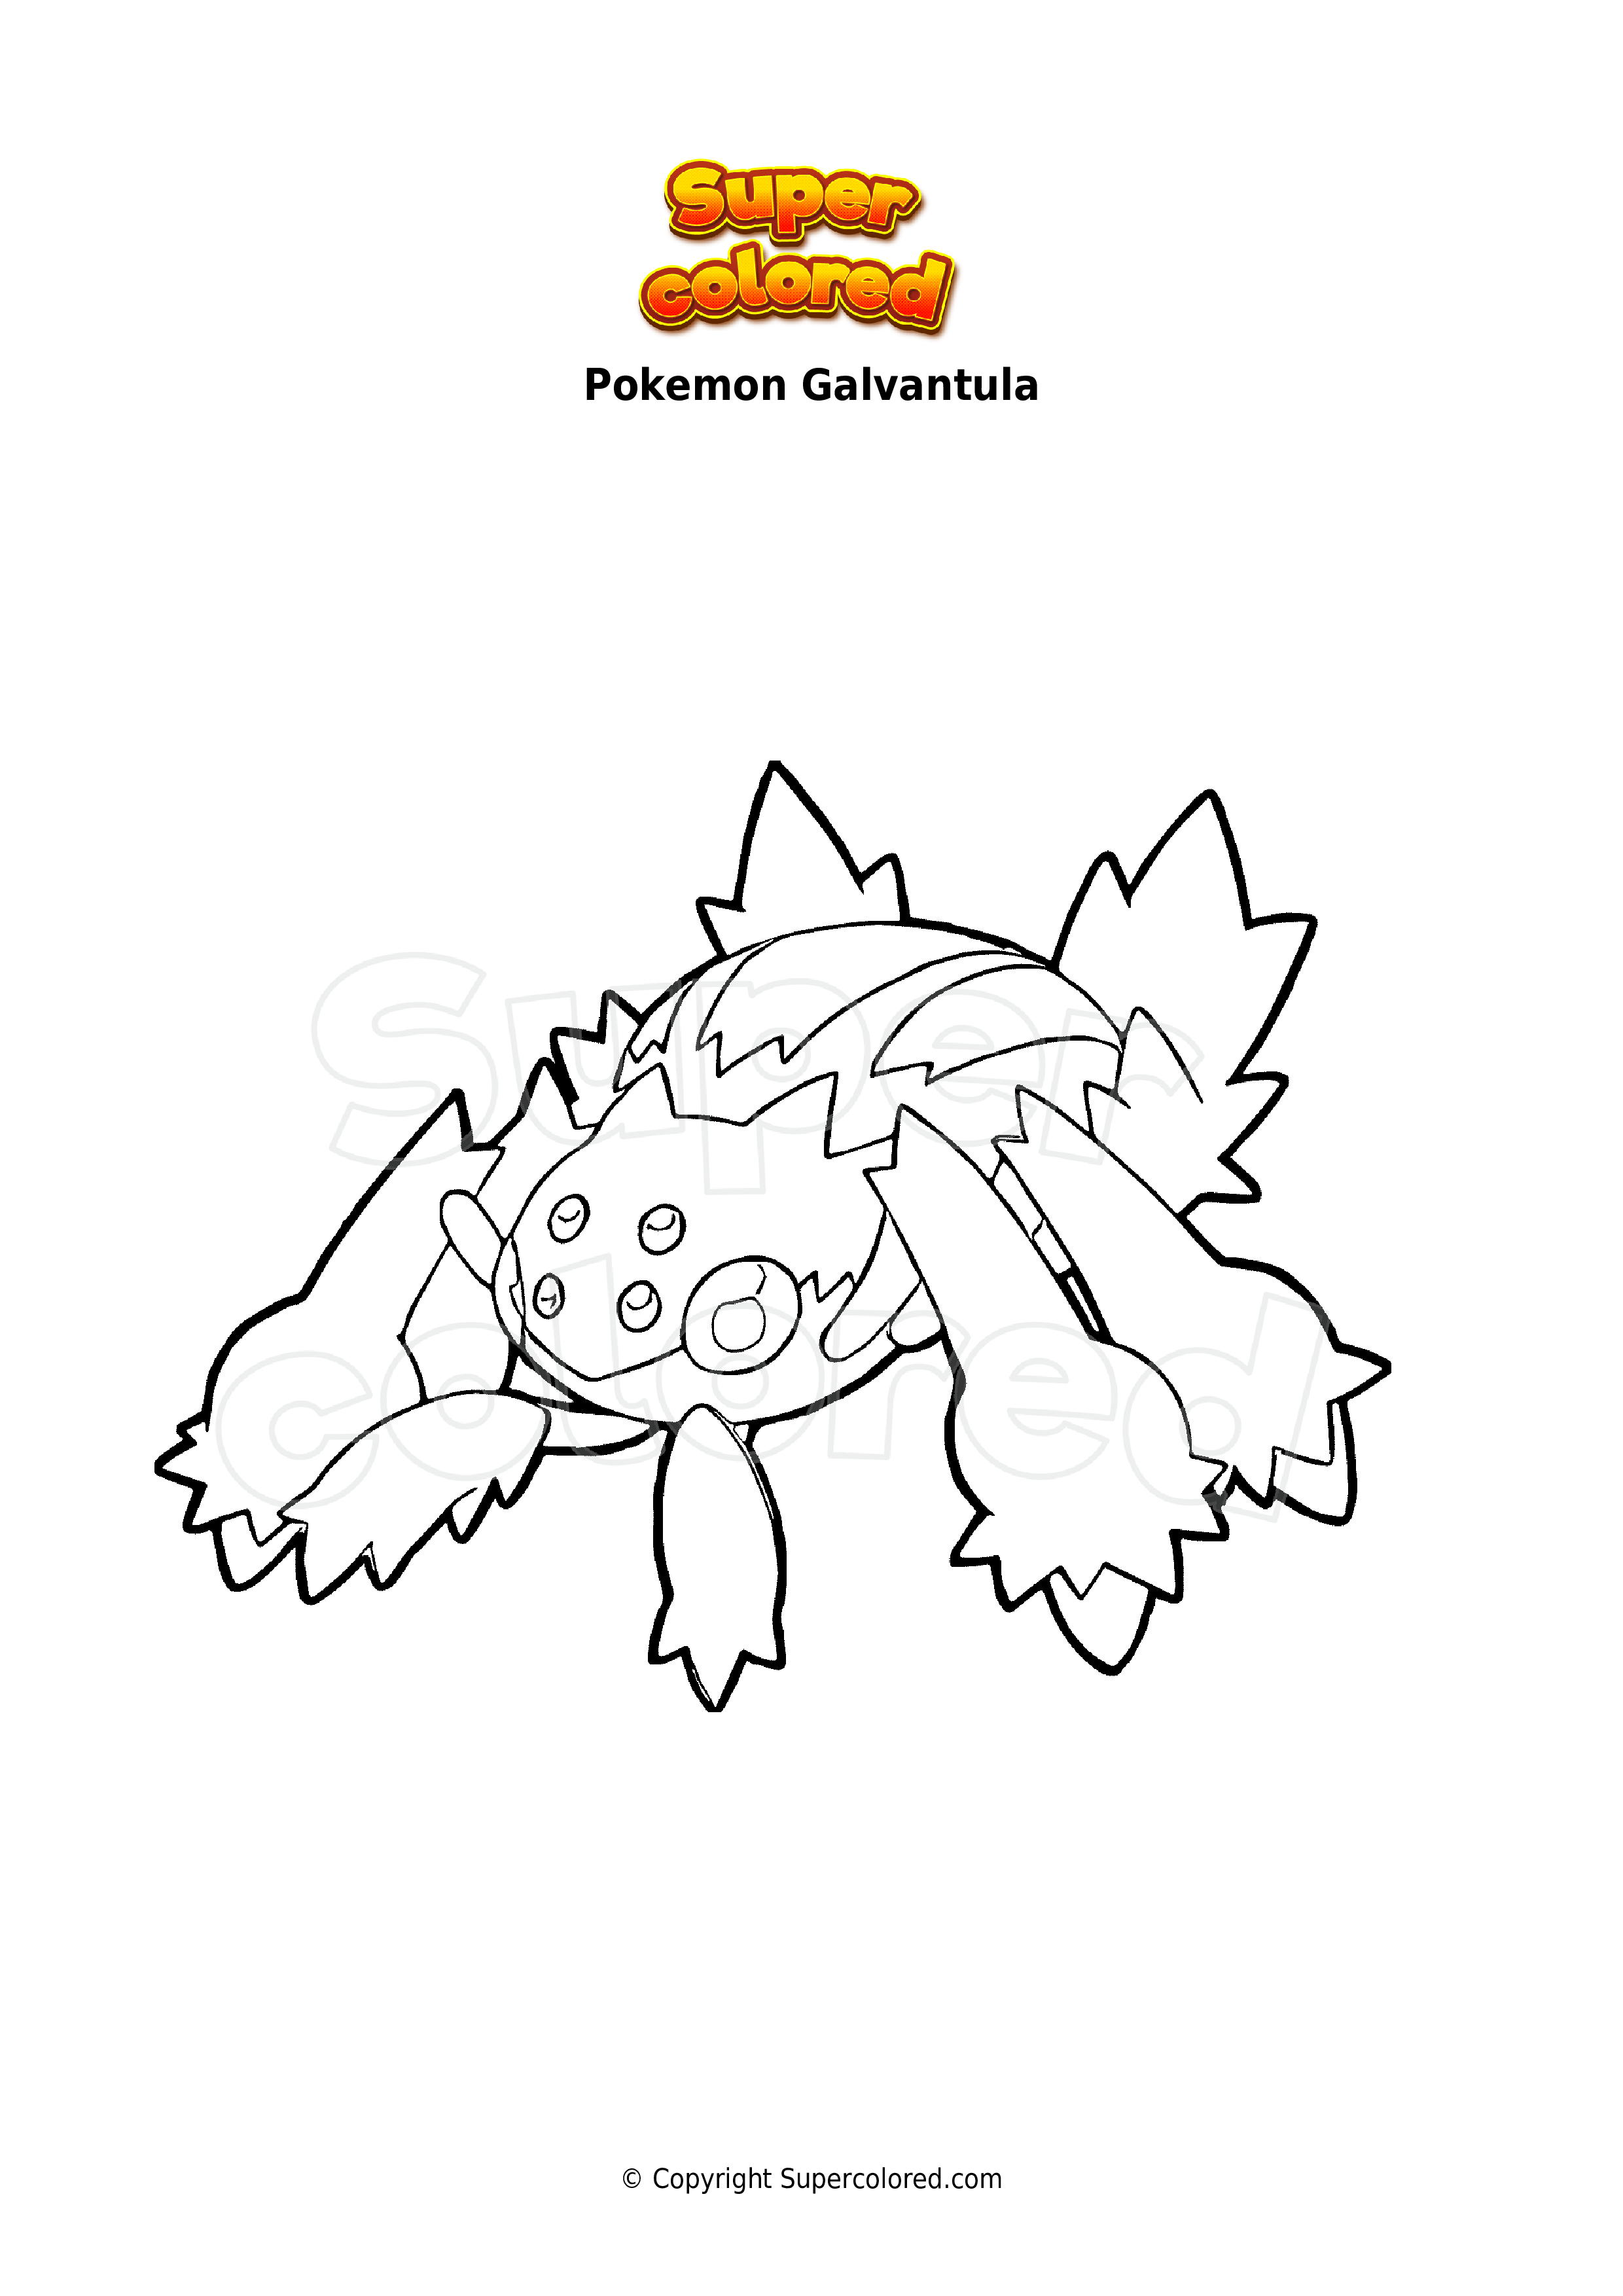 Disegno da colorare Pokemon Galvantula - Supercolored.com